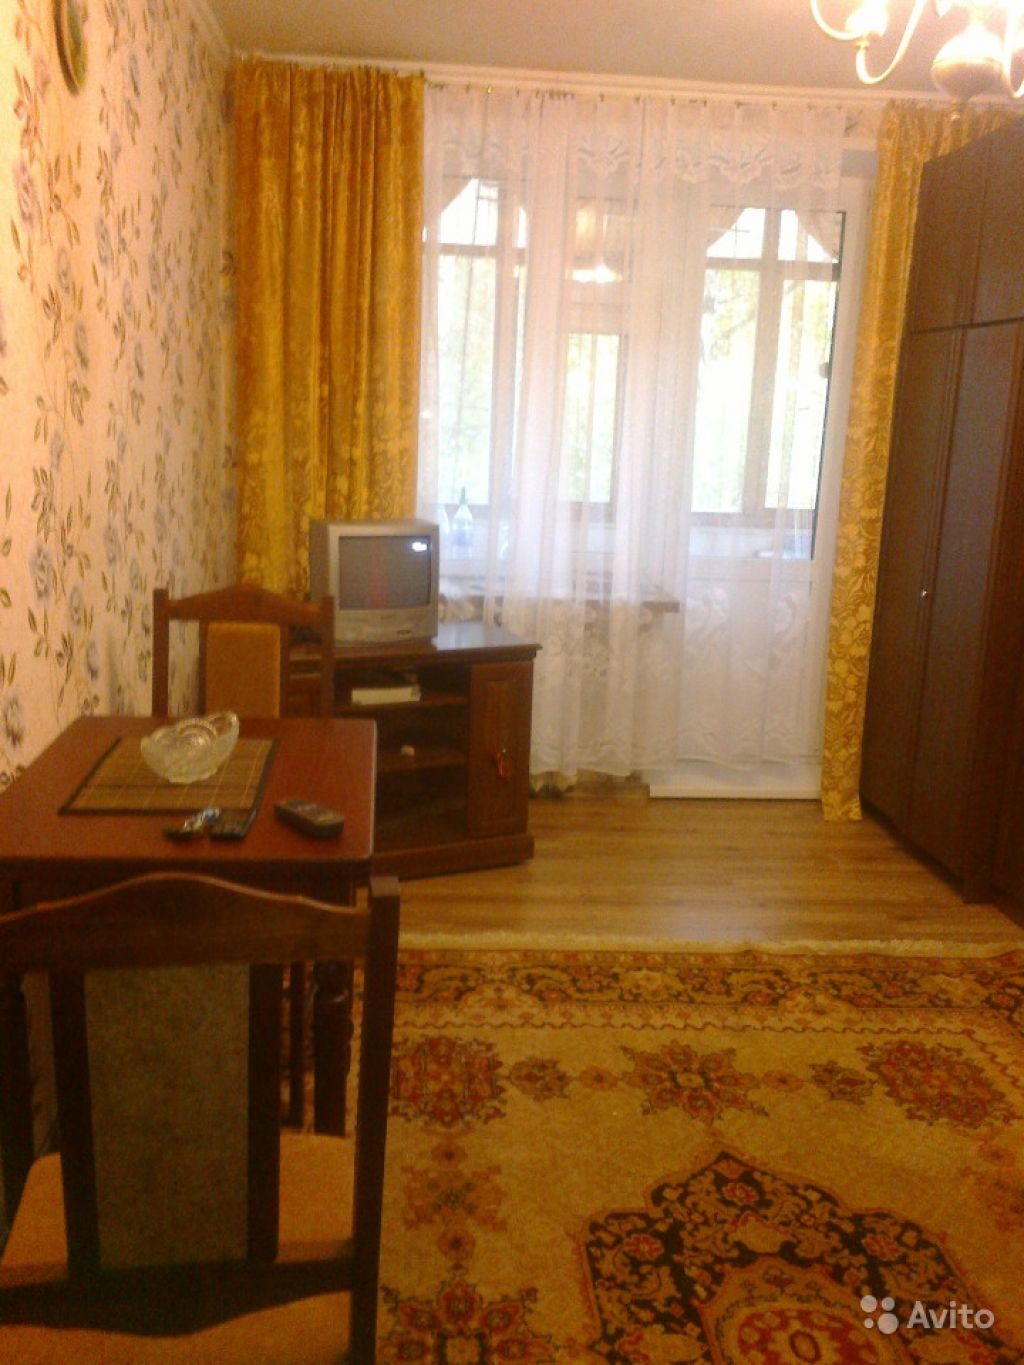 Сдам квартиру 1-к квартира 31 м² на 2 этаже 5-этажного кирпичного дома в Москве. Фото 1